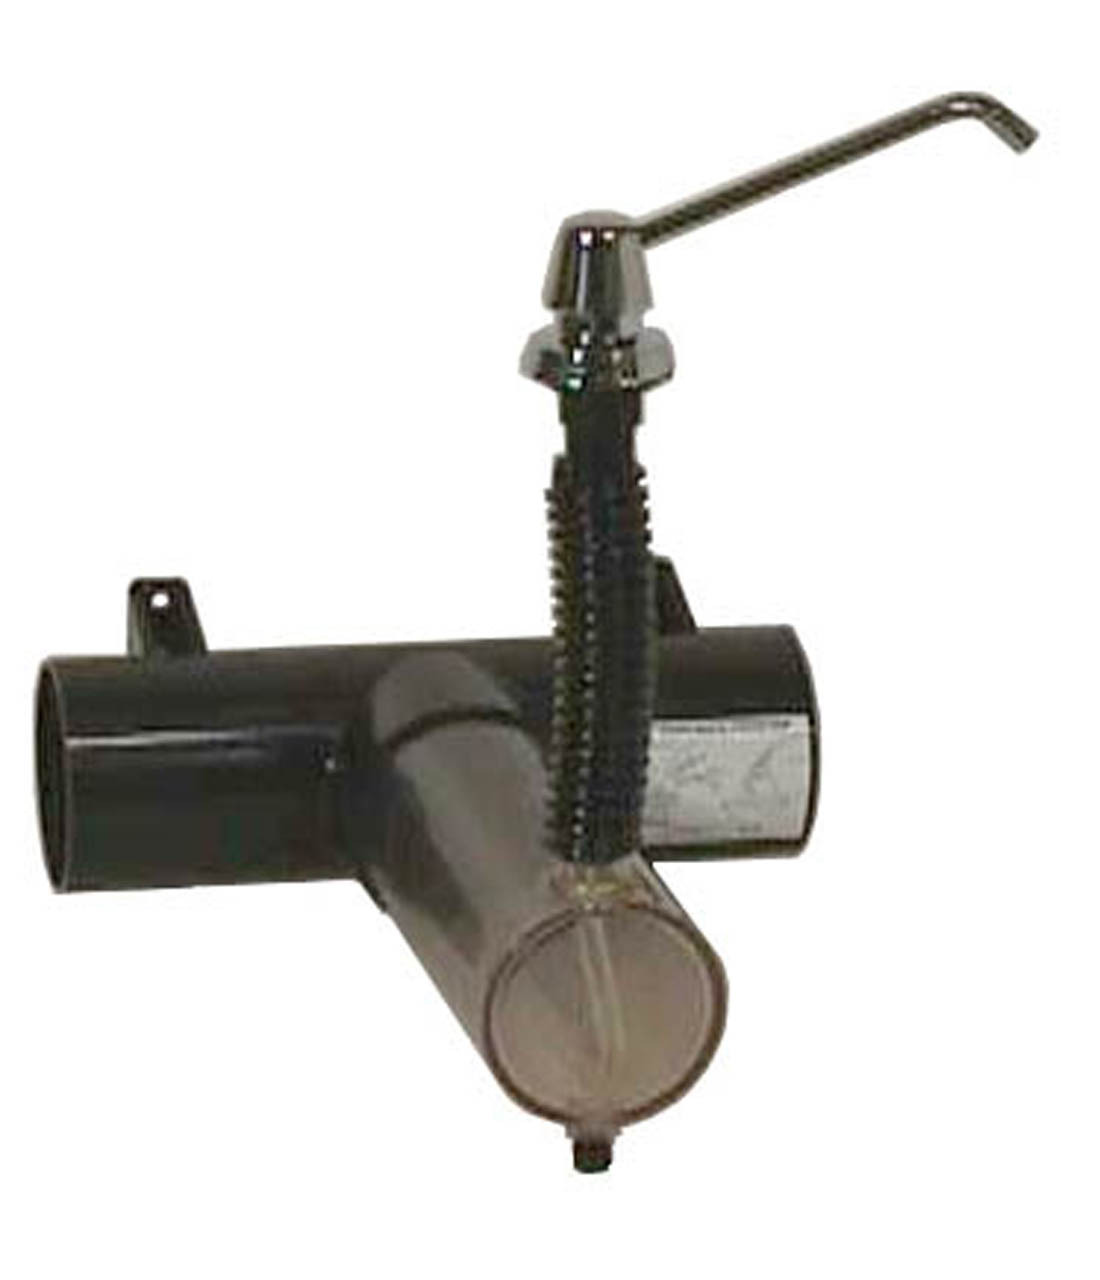 Sistema de Reserva de Jabón con Dispensador B-822 (150 mm) Image